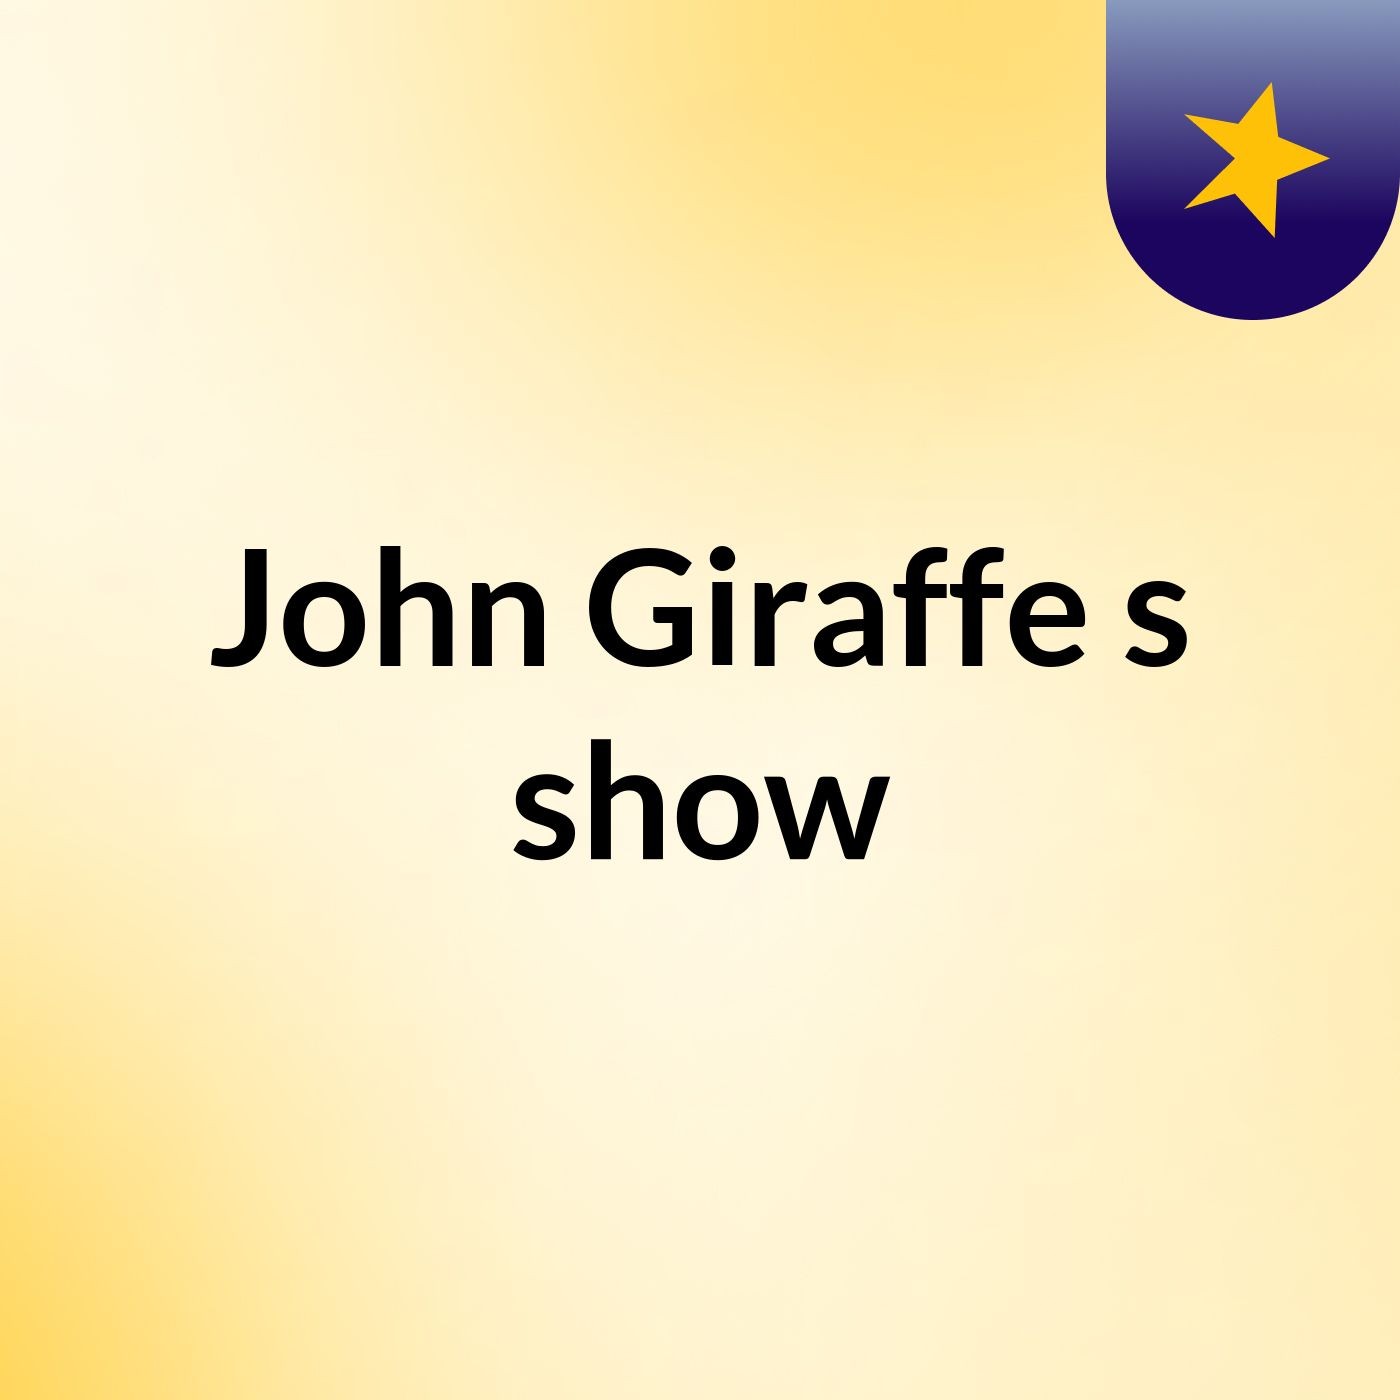 John Giraffe's show